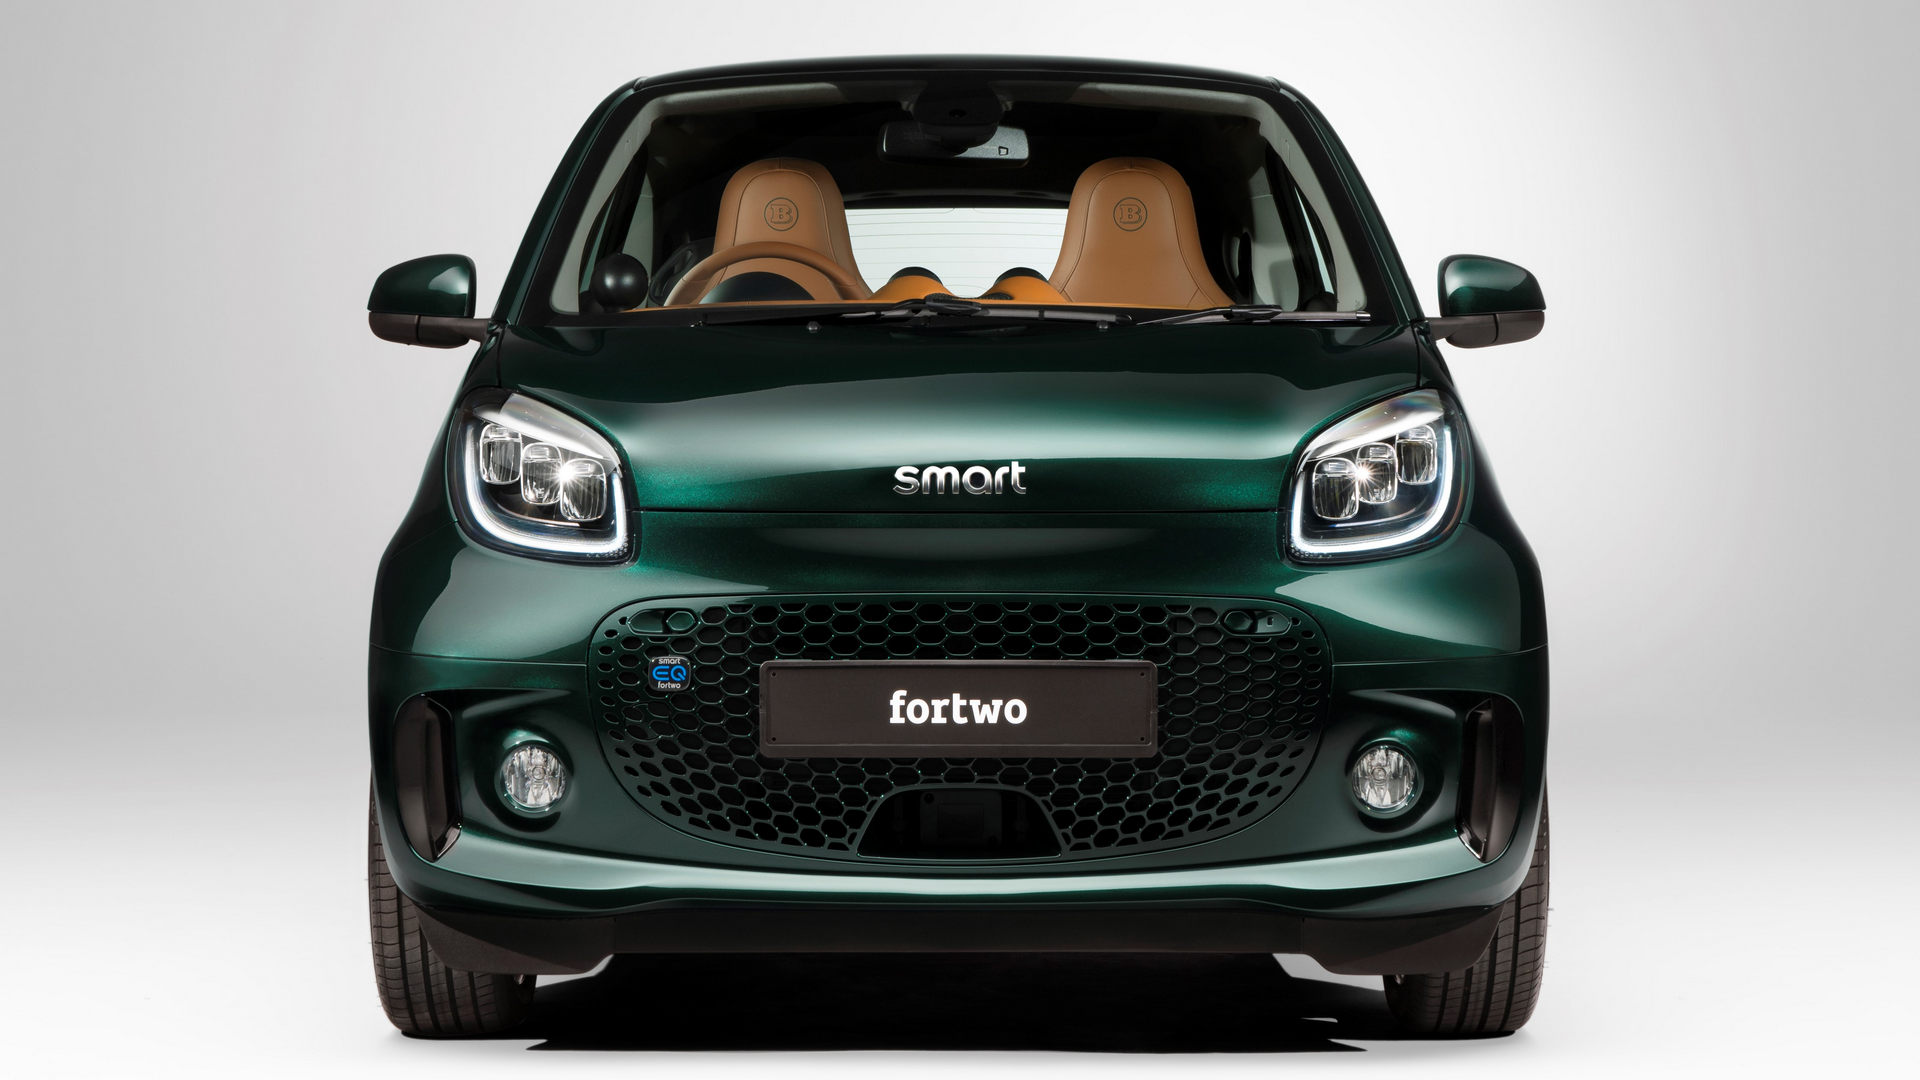 最大81马力,续航129公里,巴博斯推出smart eq fortwo赛车绿版微型电动